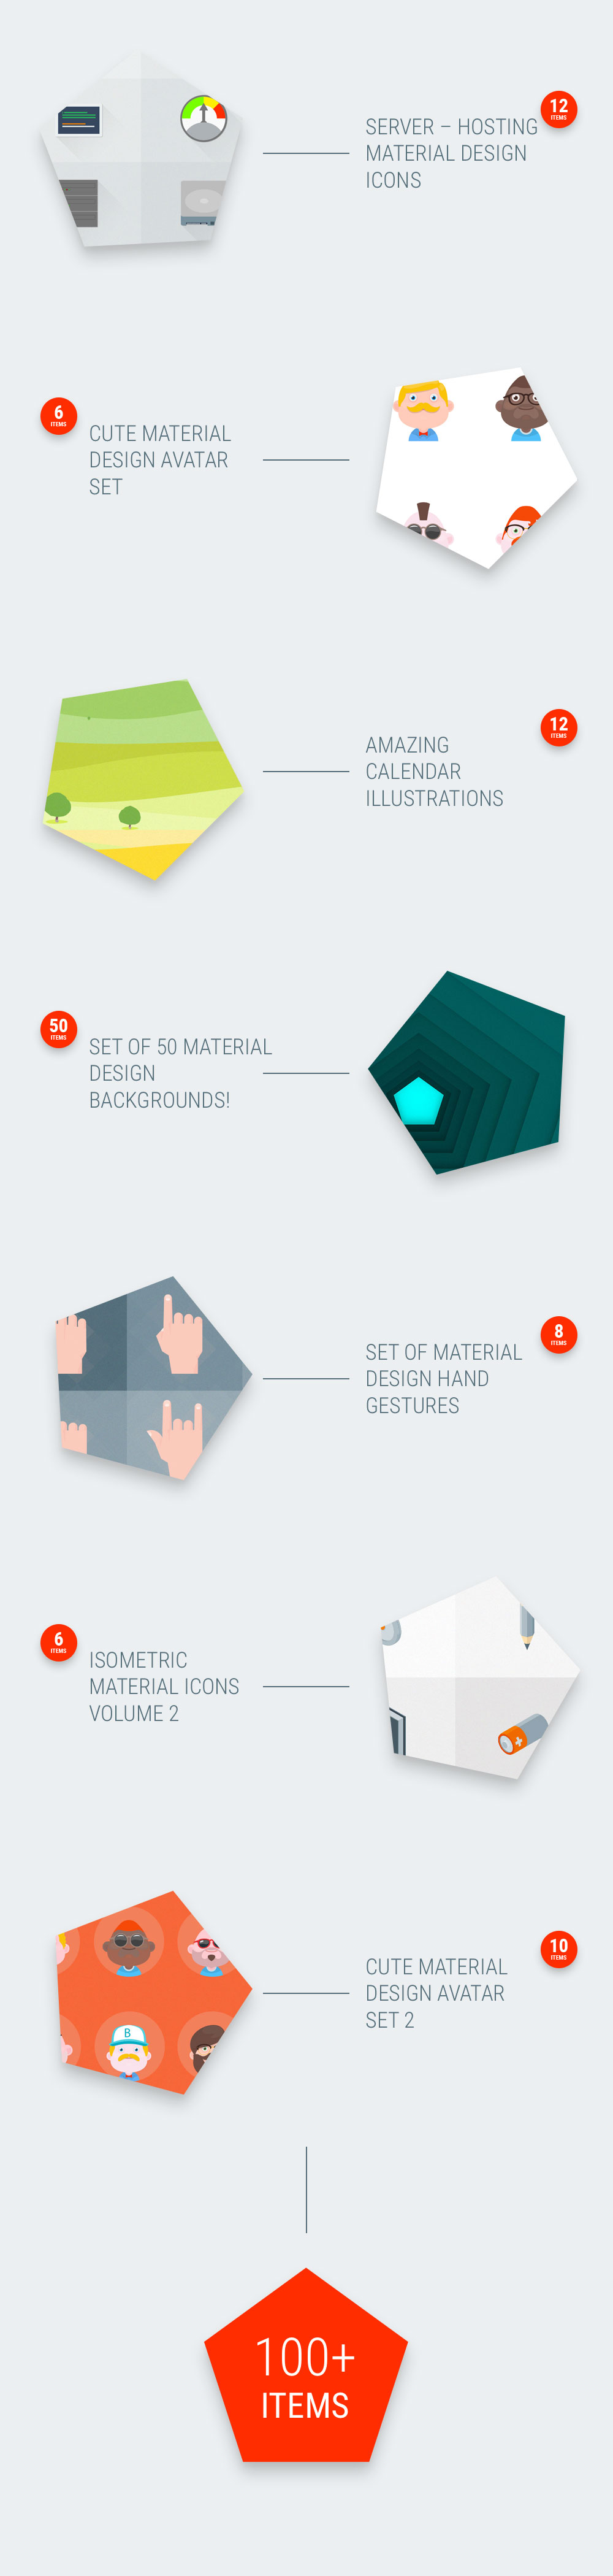 Material Design Bundle